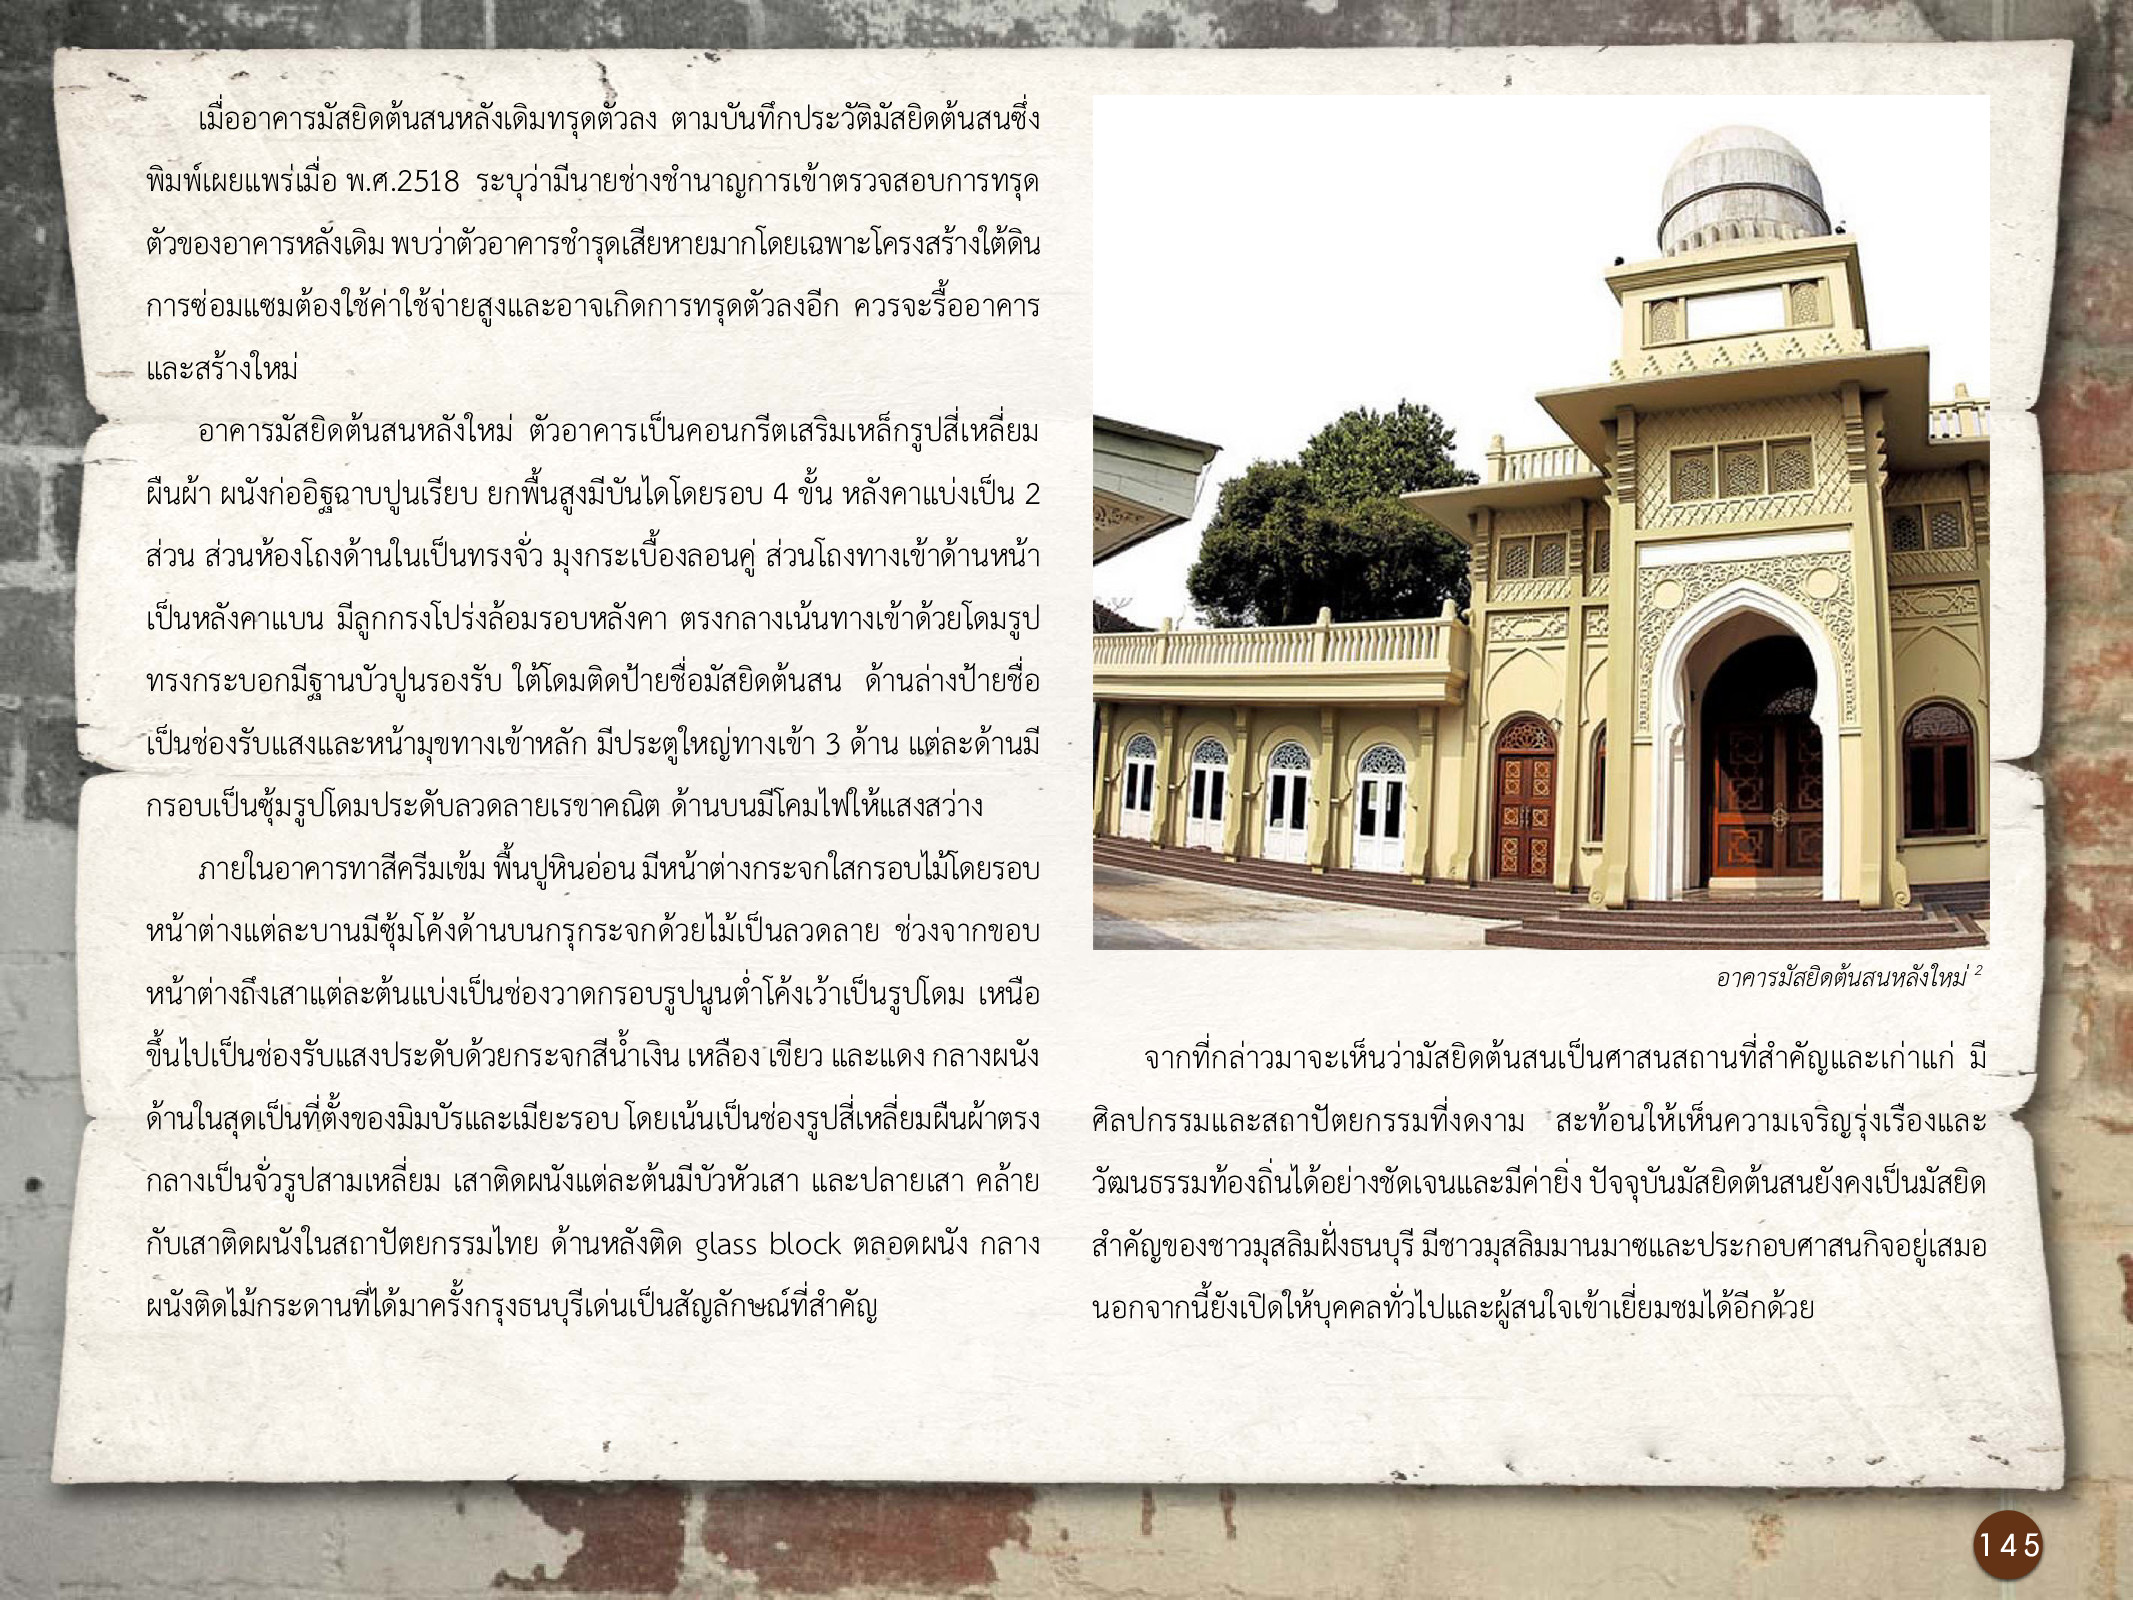 ศิลปกรรมกรุงธนบุรี ./images/encyclopedia/145.jpg